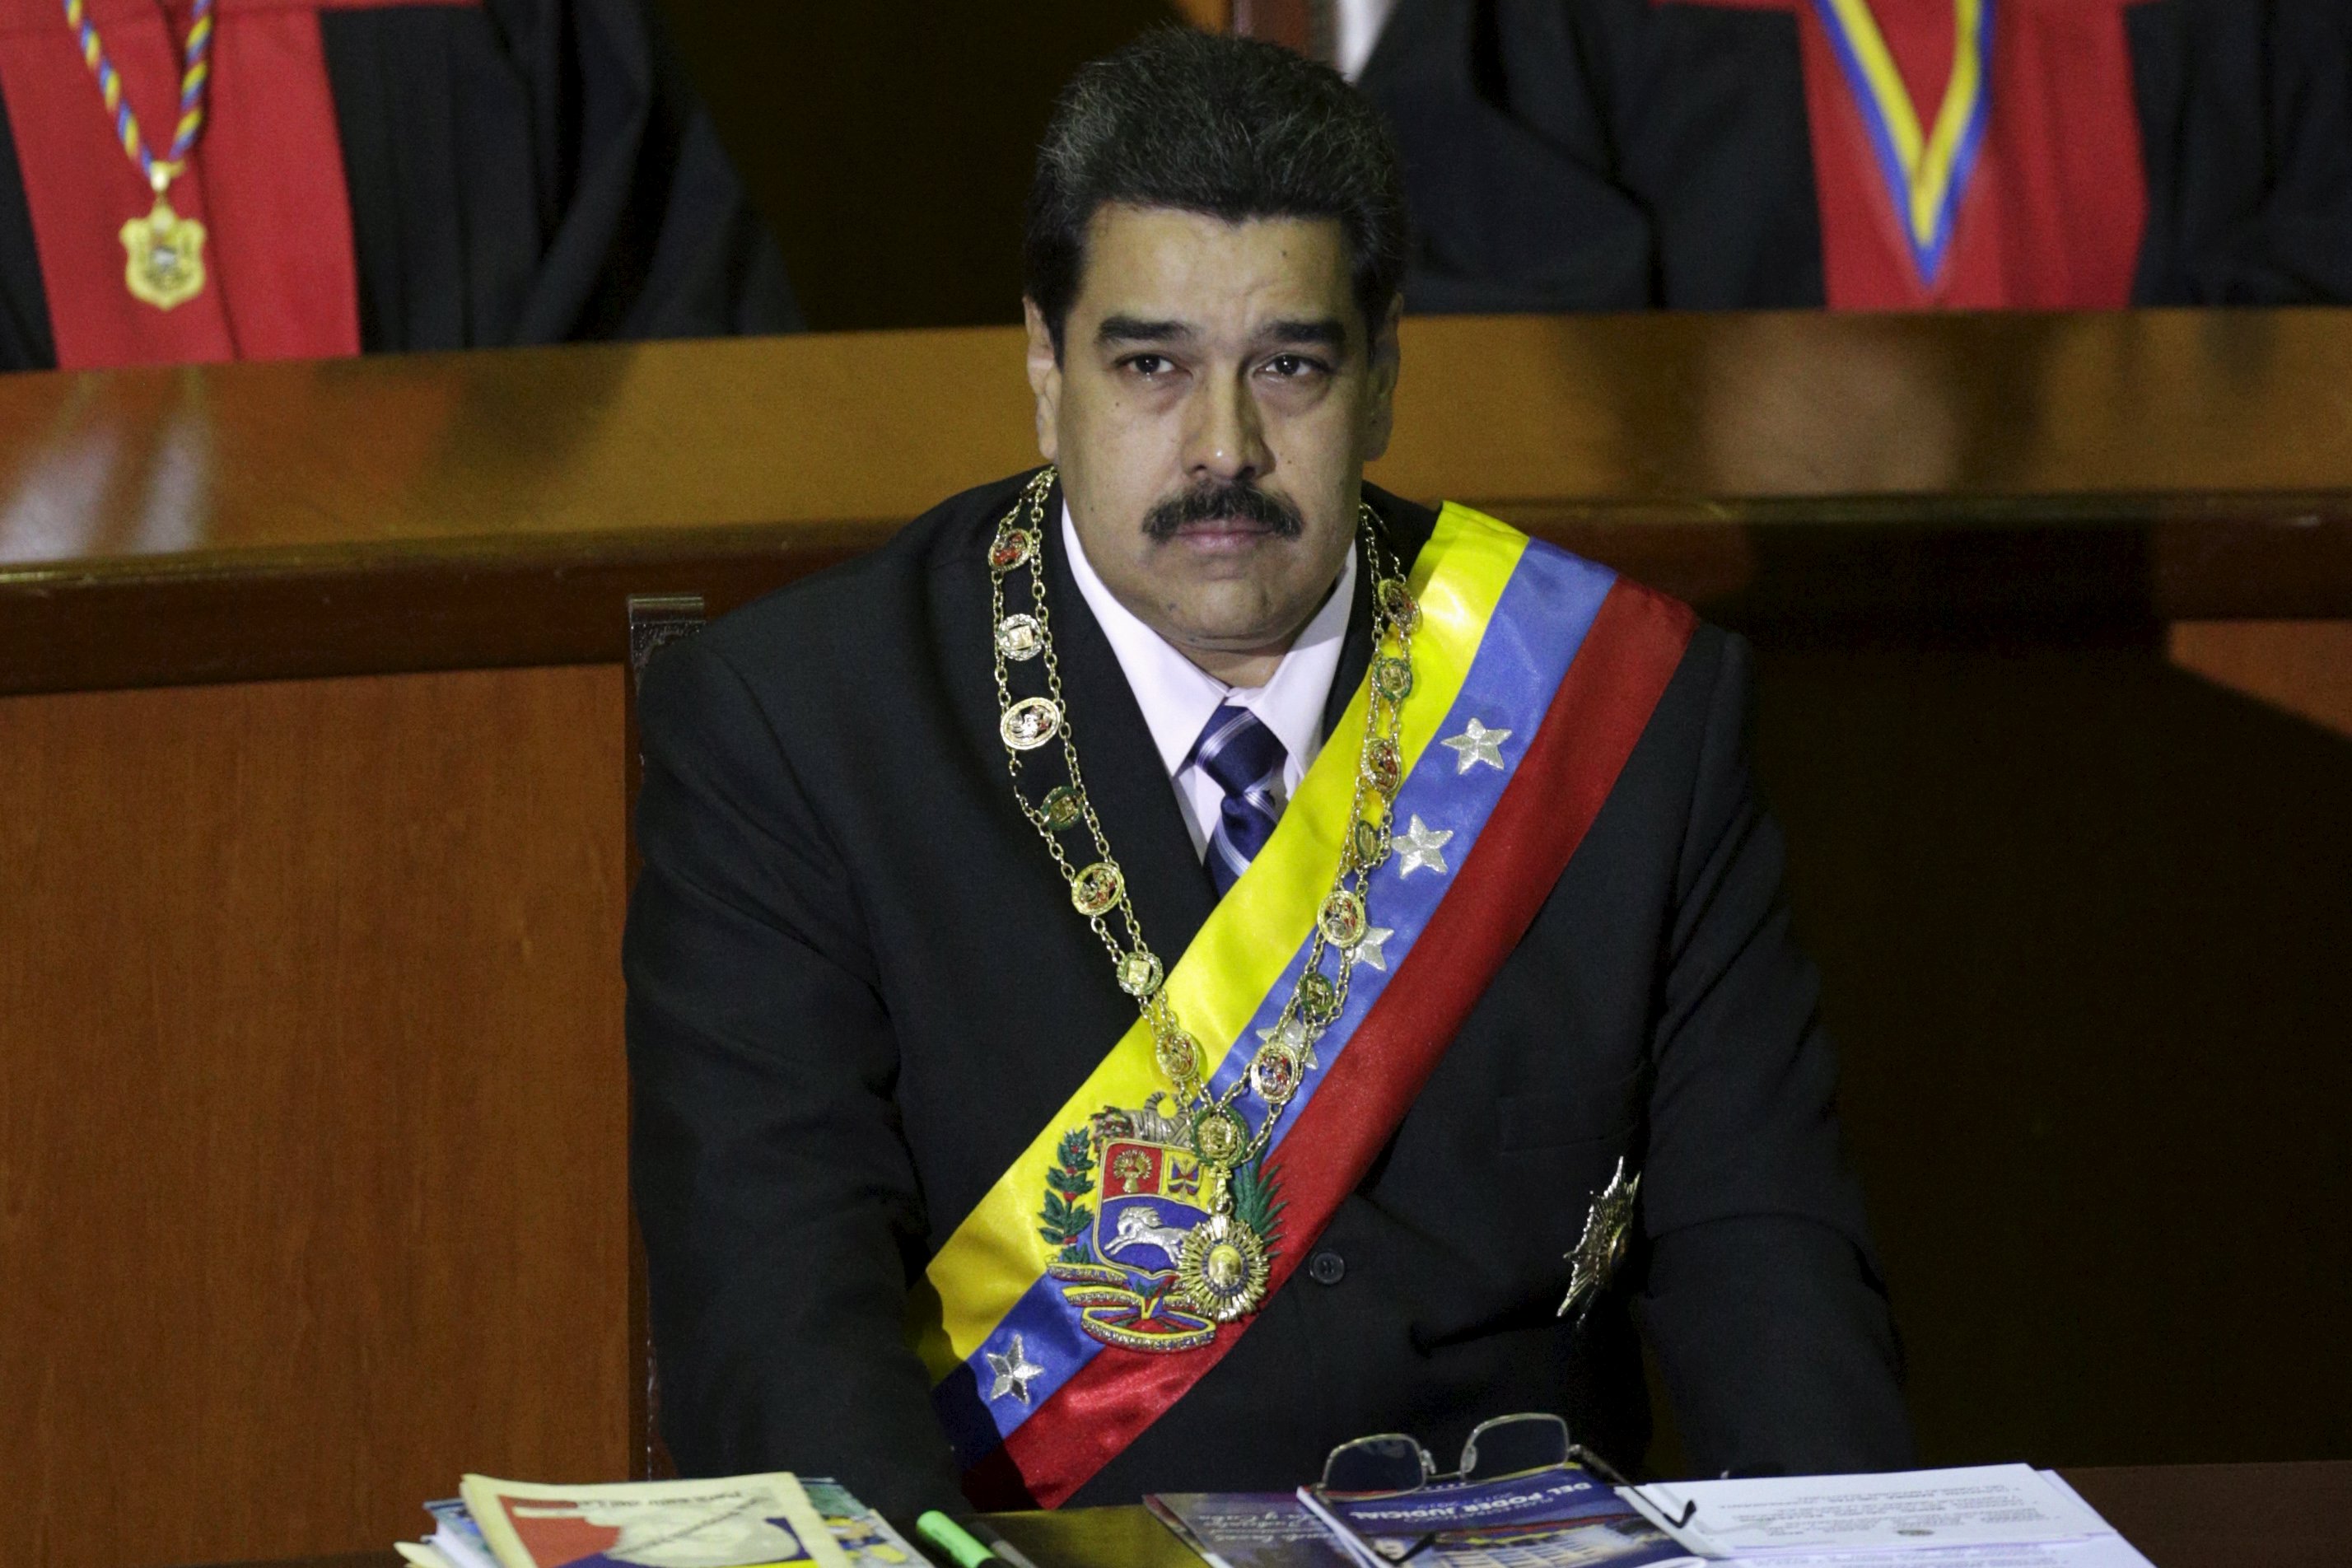 ¿Qué escondía la mirada de Maduro durante el acto en el TSJ? (FOTOS+ENCUESTA)